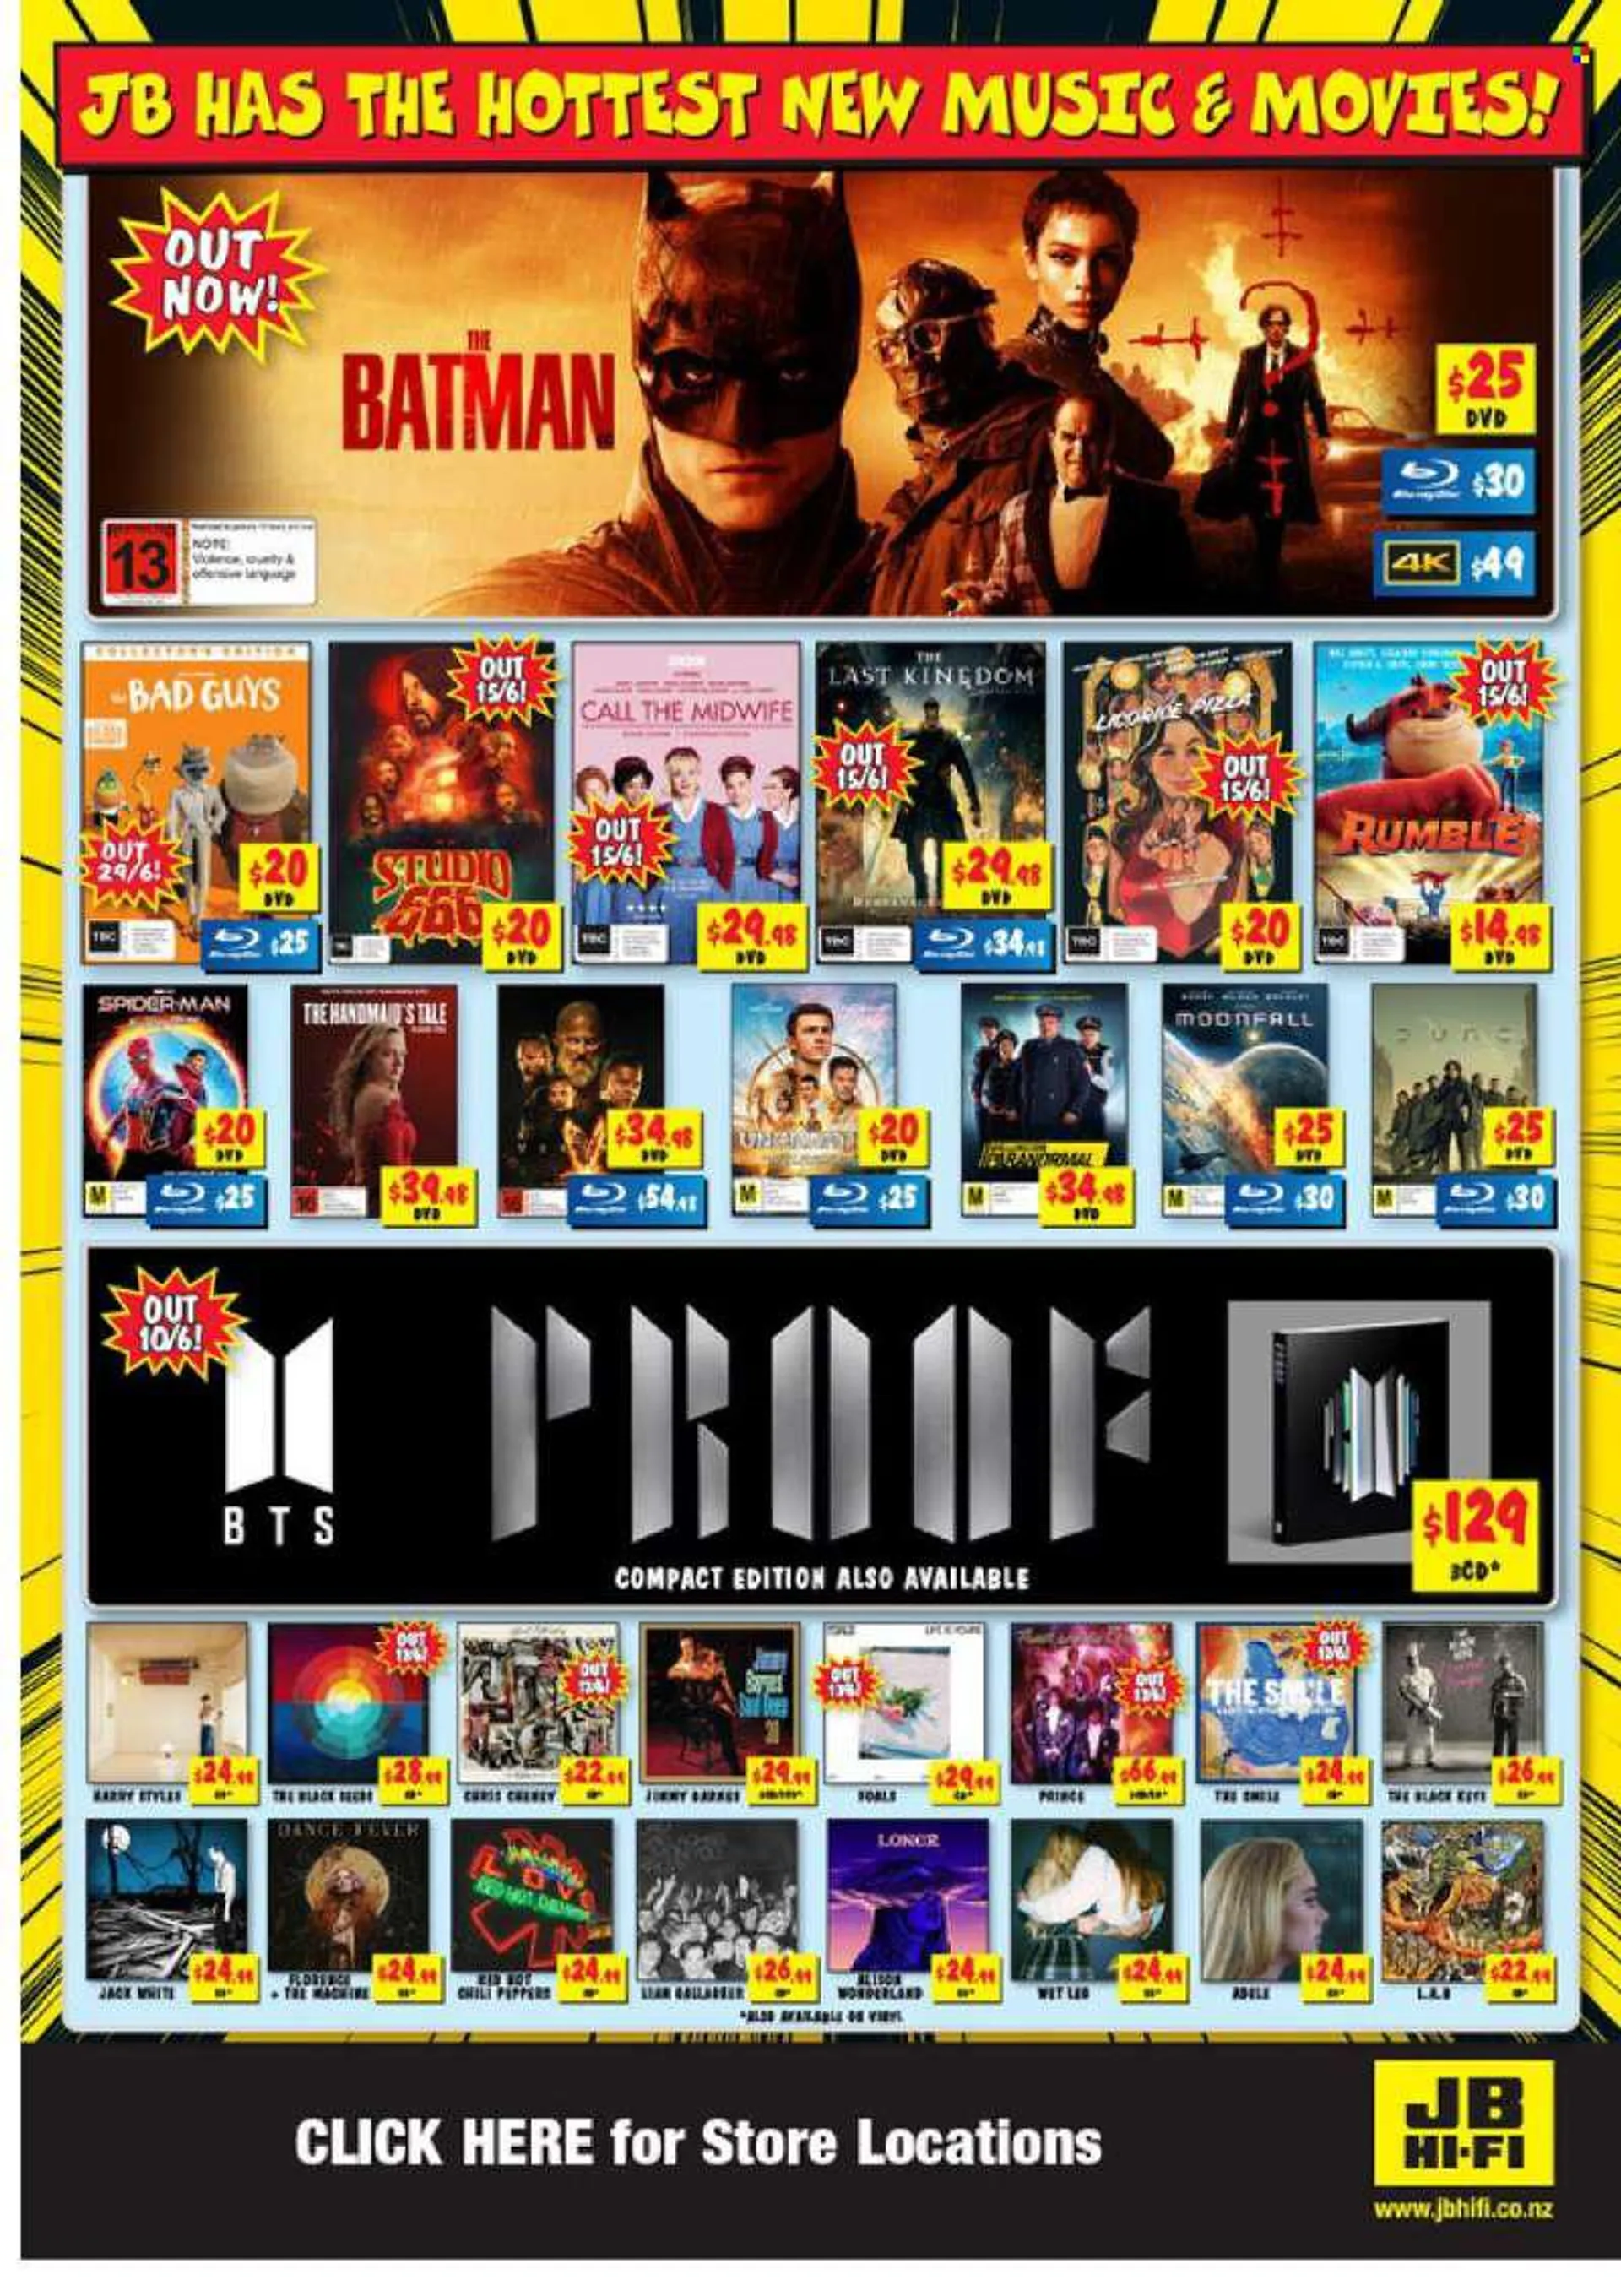 JB Hi-Fi mailer - 09.06.2022 - 22.06.2022 - Sales products - Hewlett Packard, hi-fi, Batman. Page 20.